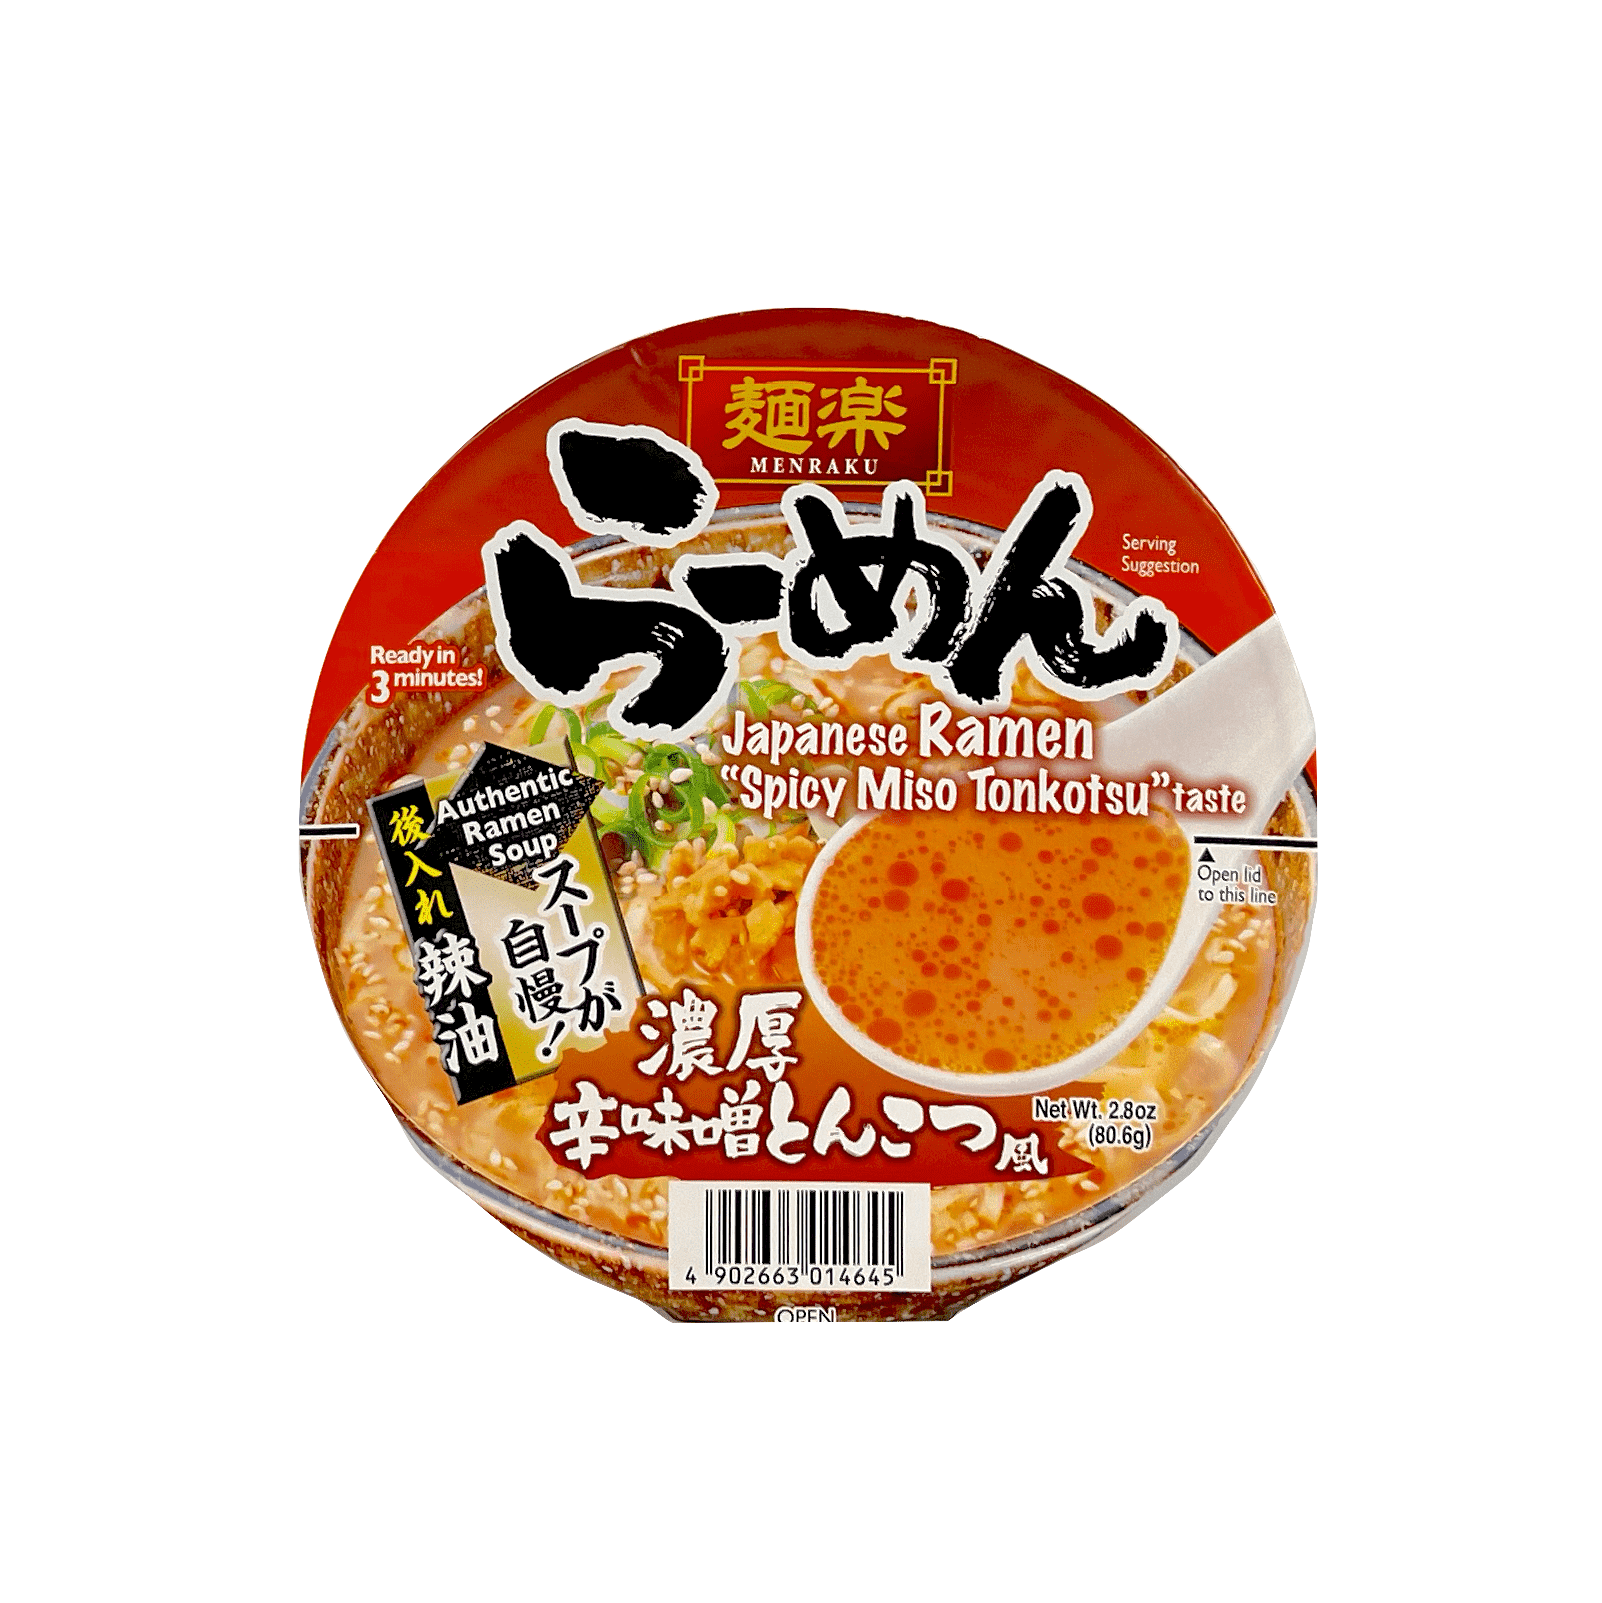 方便碗面 辣味味增豚骨风味 82.3g Hikari Menraku 日本